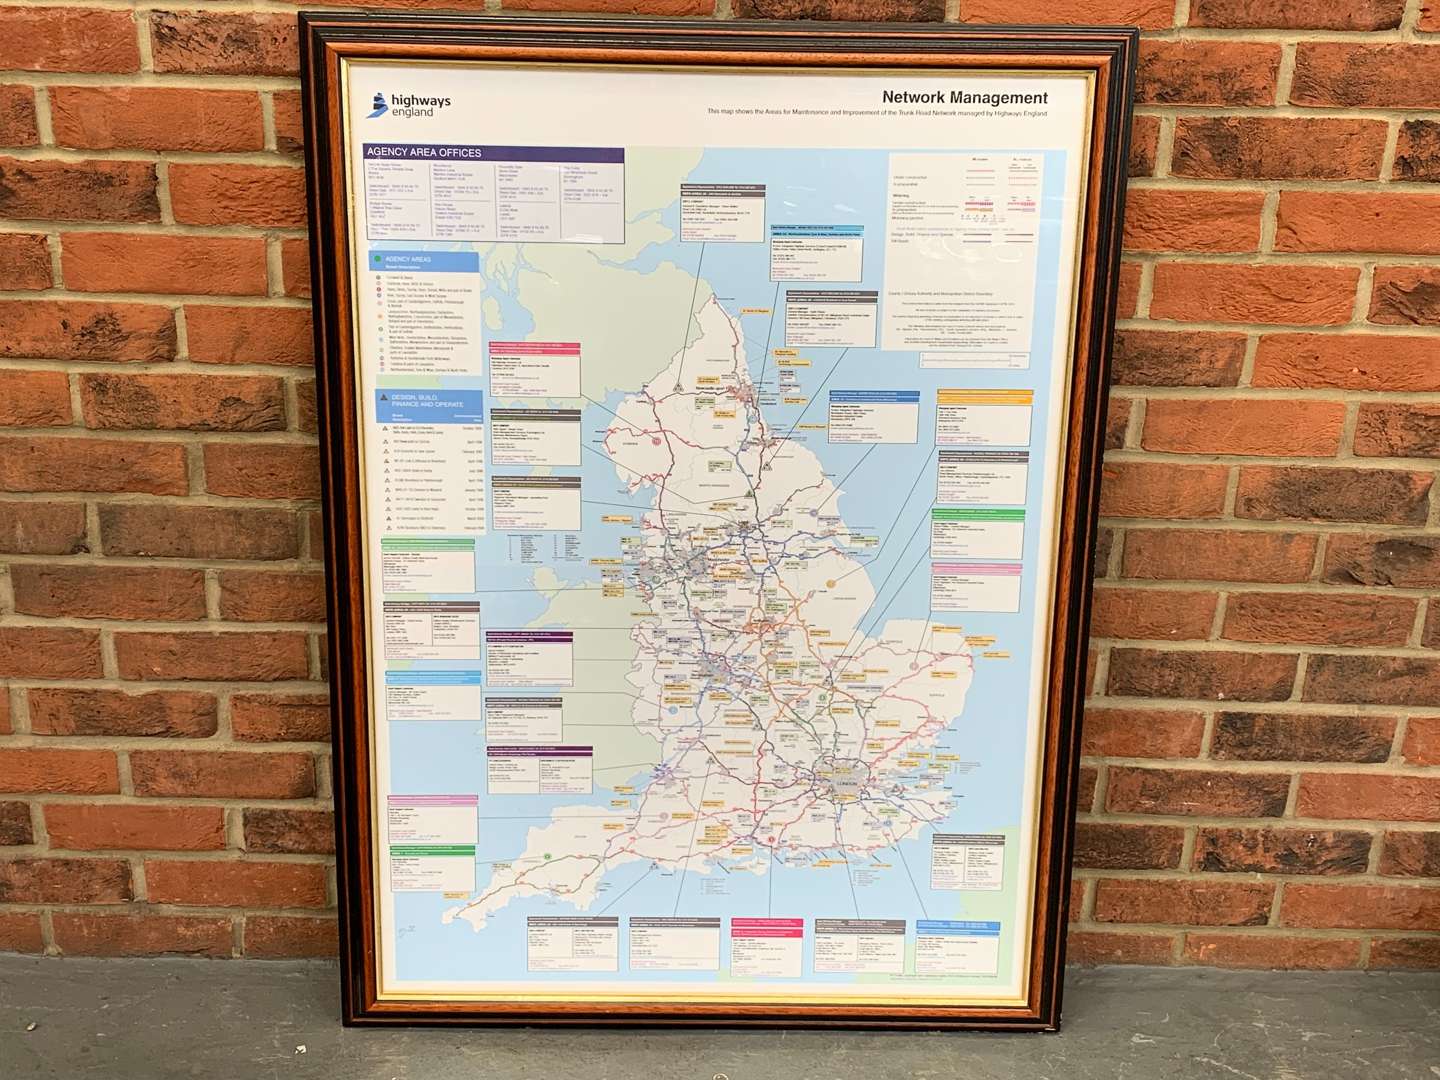 <p>Framed Highways England Network Management Map</p>